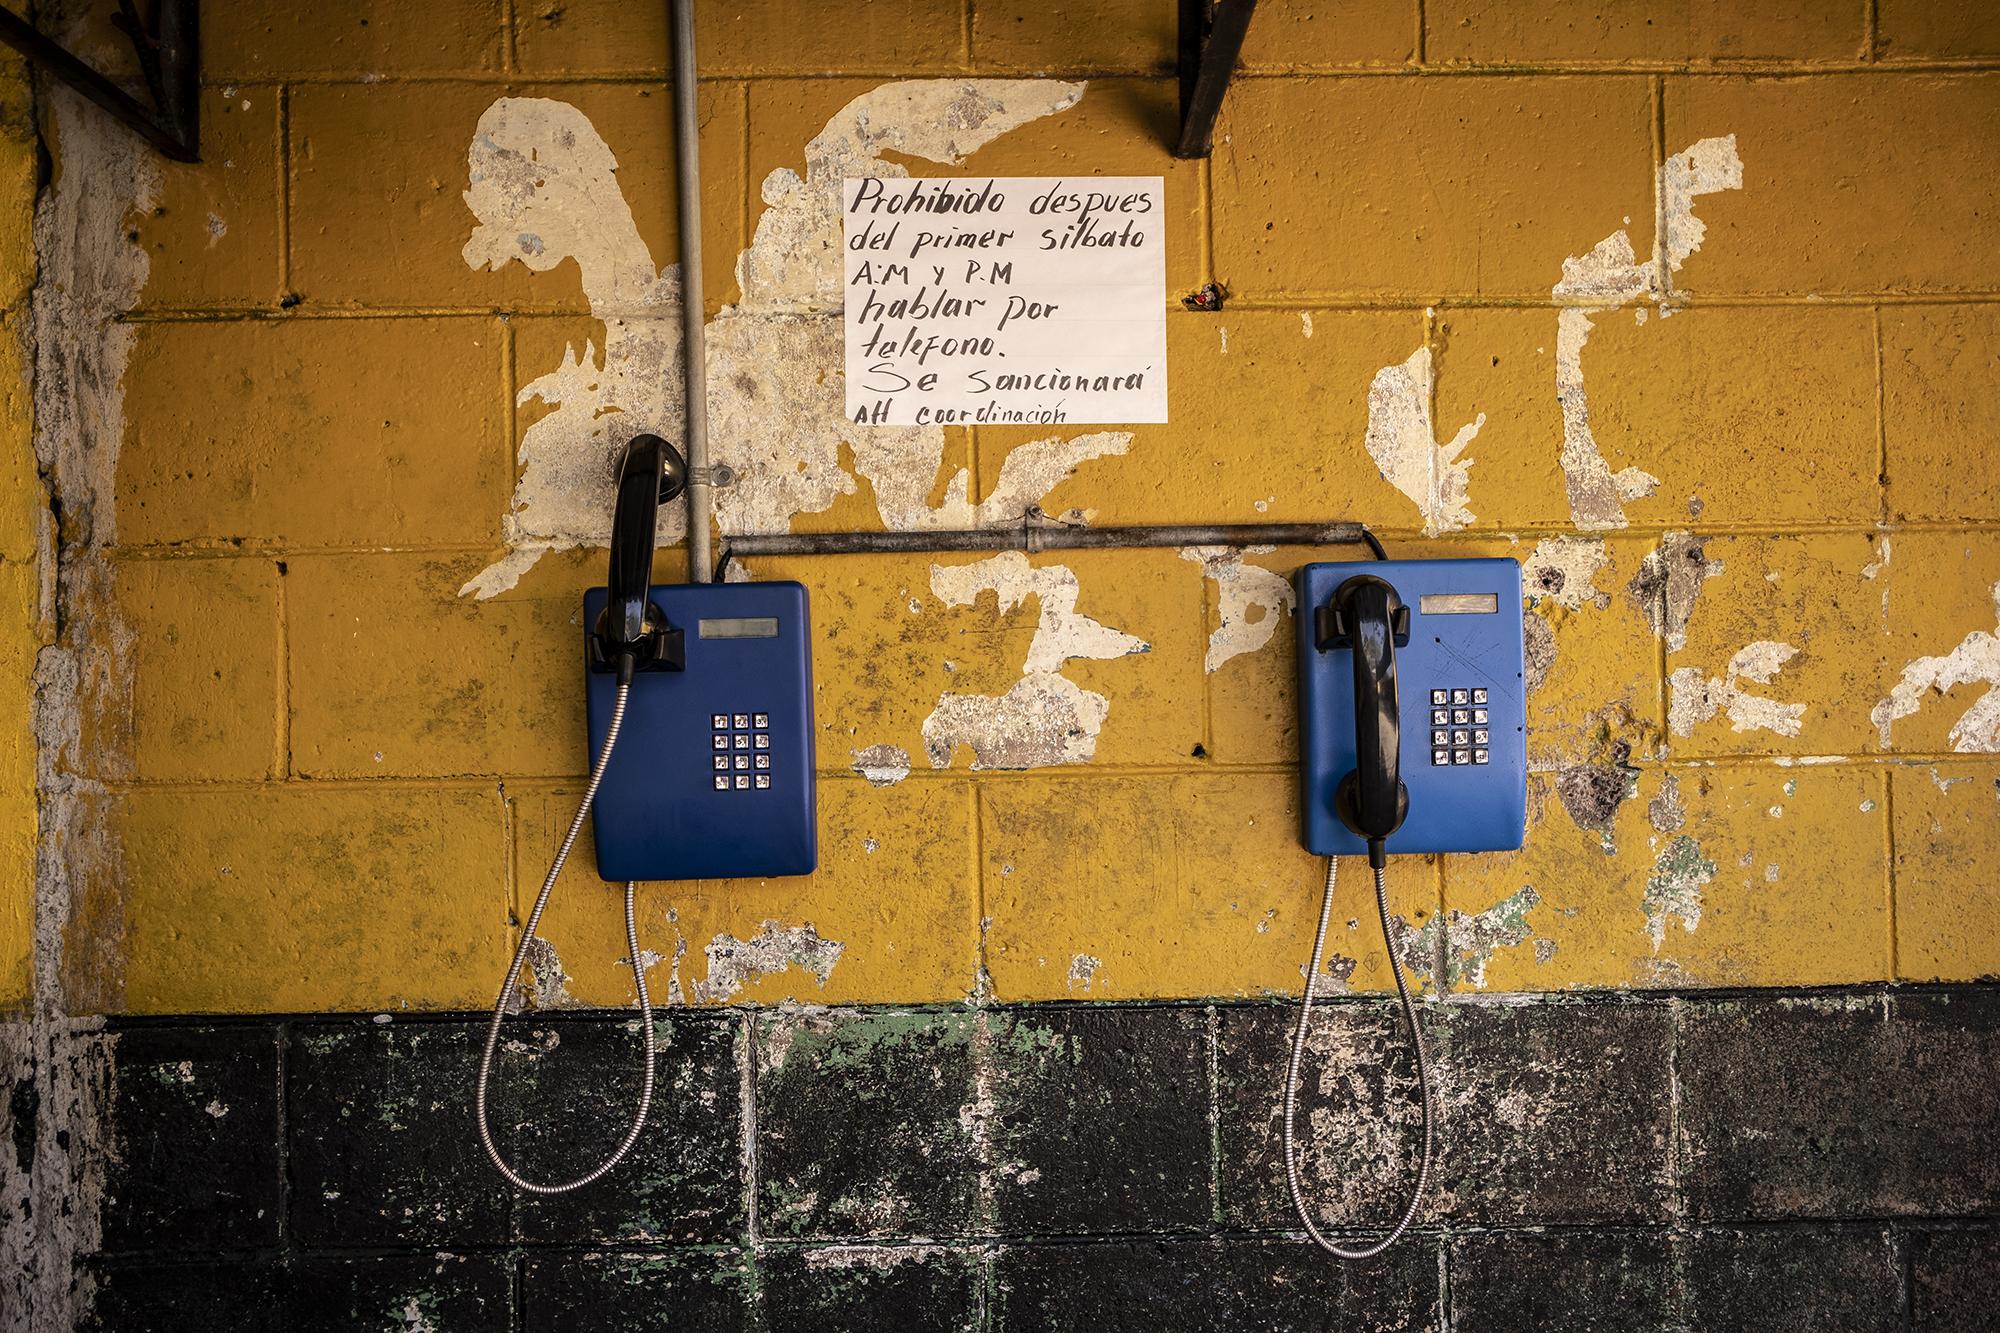 En los distintos sectores se han colocado teléfonos para que los reos puedan hablar a sus familias, pero todas las llamadas se hacen bajo estricto monitoreo, además de ser pagadas por los internos. Foto Carlos Barrera.